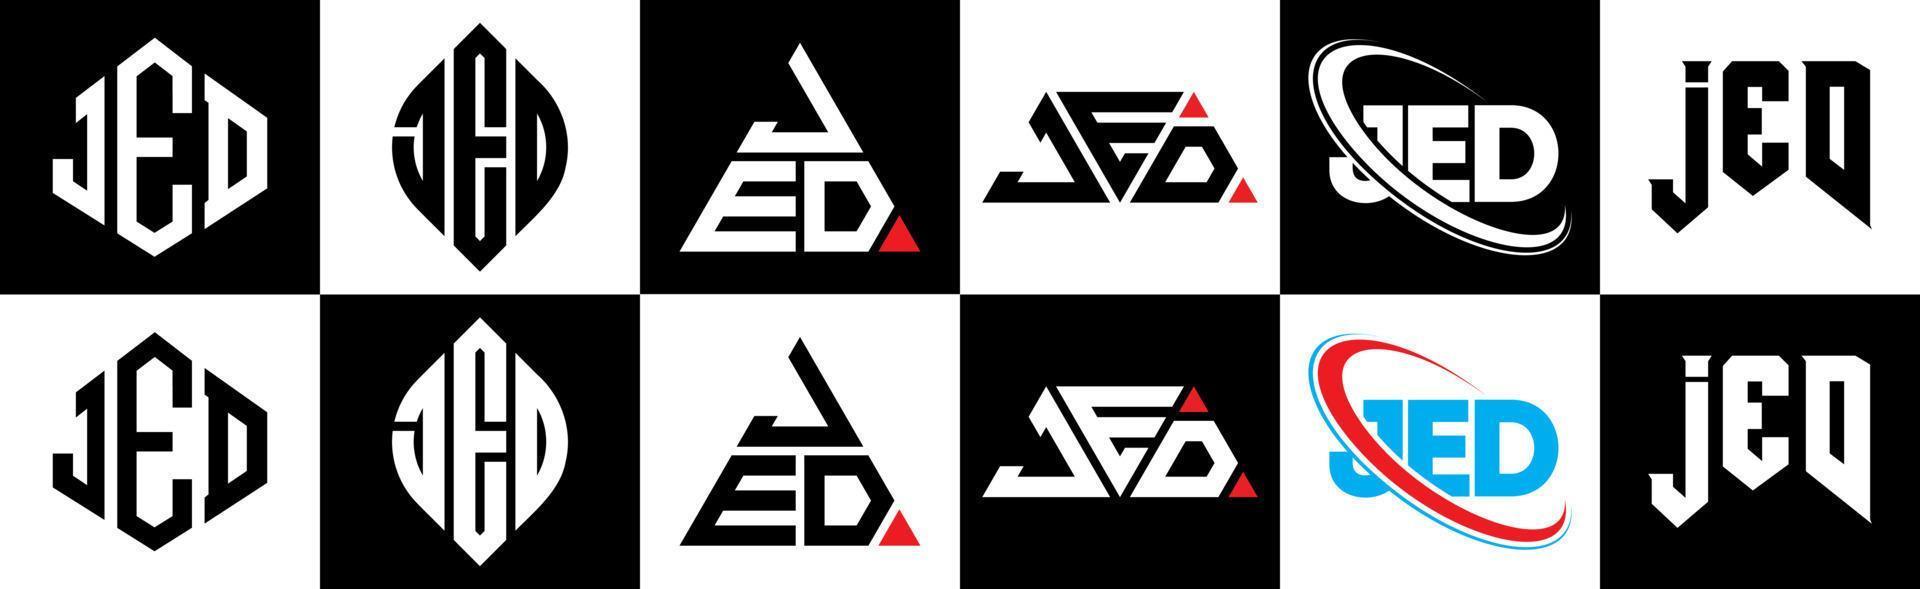 Jed-Buchstaben-Logo-Design in sechs Stilen. jed polygon, kreis, dreieck, sechseck, flacher und einfacher stil mit schwarz-weißem buchstabenlogo in einer zeichenfläche. jed minimalistisches und klassisches logo vektor